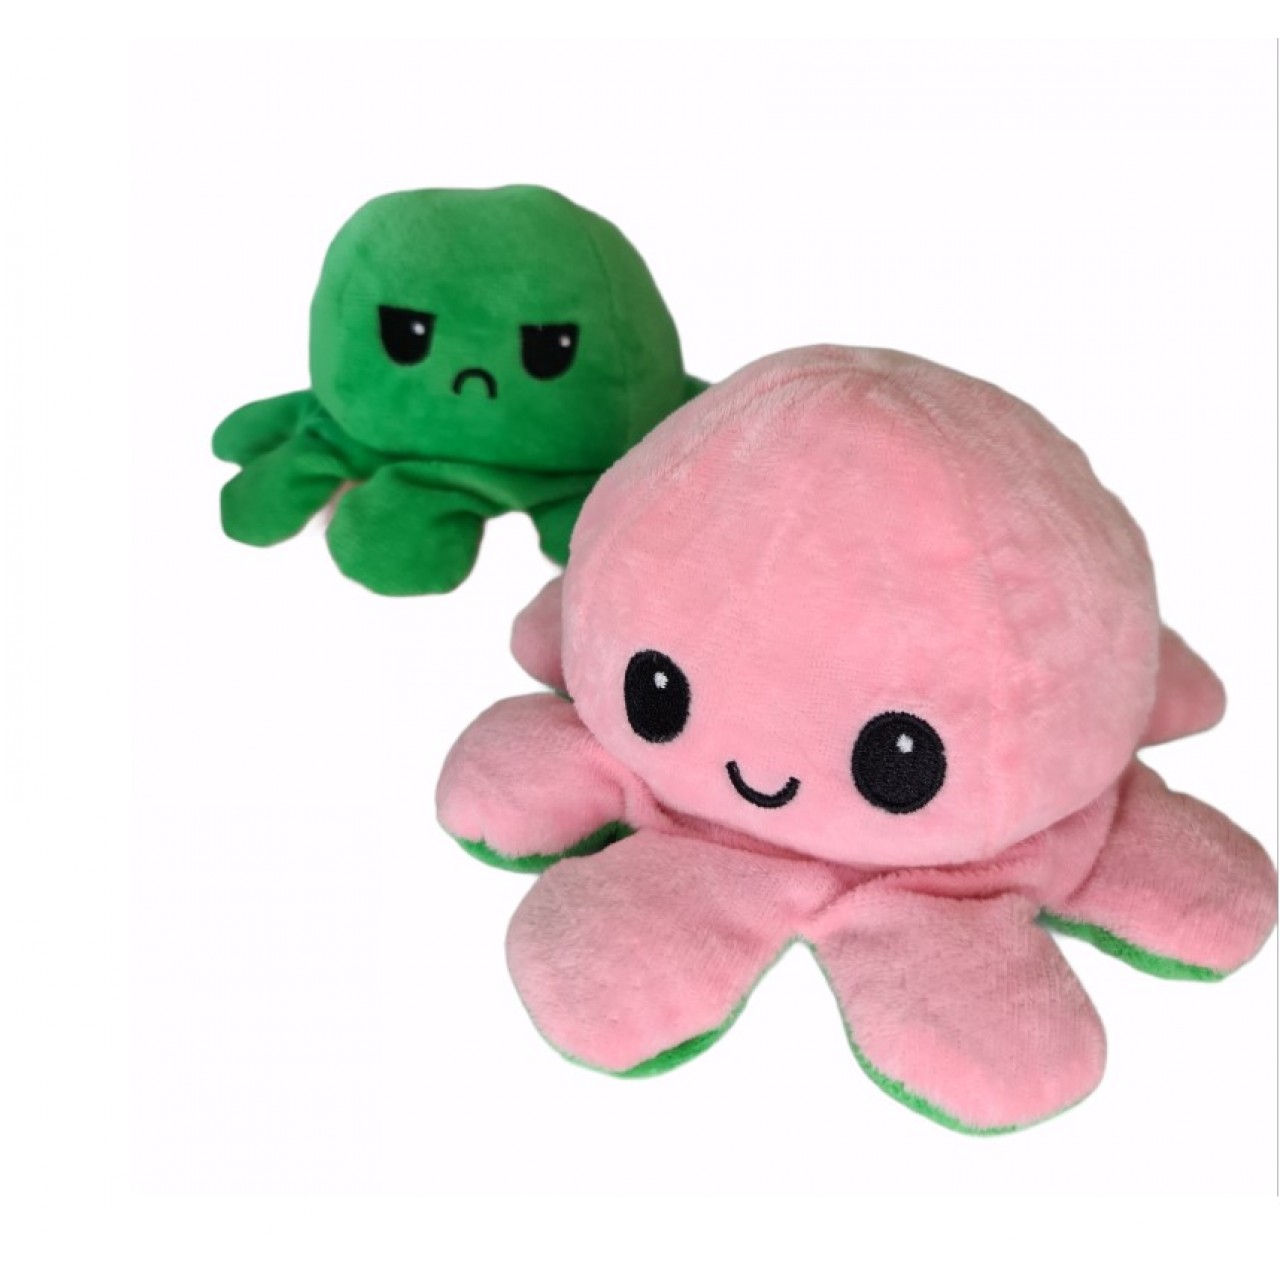 Χταπόδι διπλής όψης λούτρινο emotional reversible octopus plush 12 εκ - 5265 - Πράσινο σκούρο / Ανοιχτό ροζ